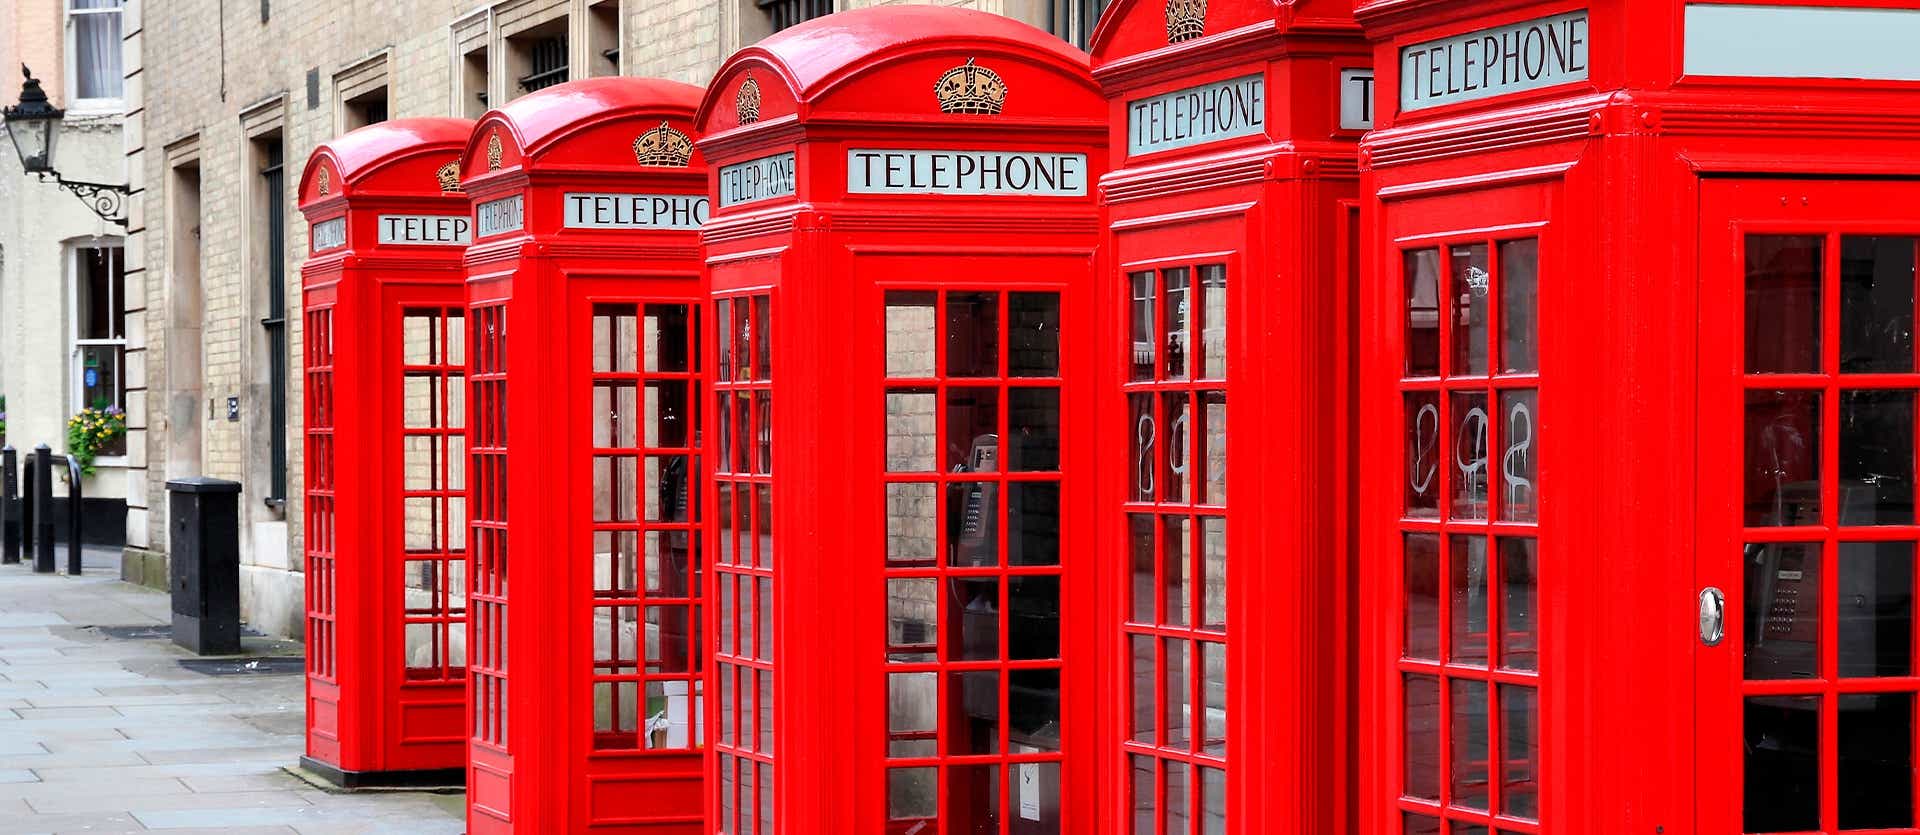 Red Phone Boxes <span class="iconos separador"></span> London <span class="iconos separador"></span> England